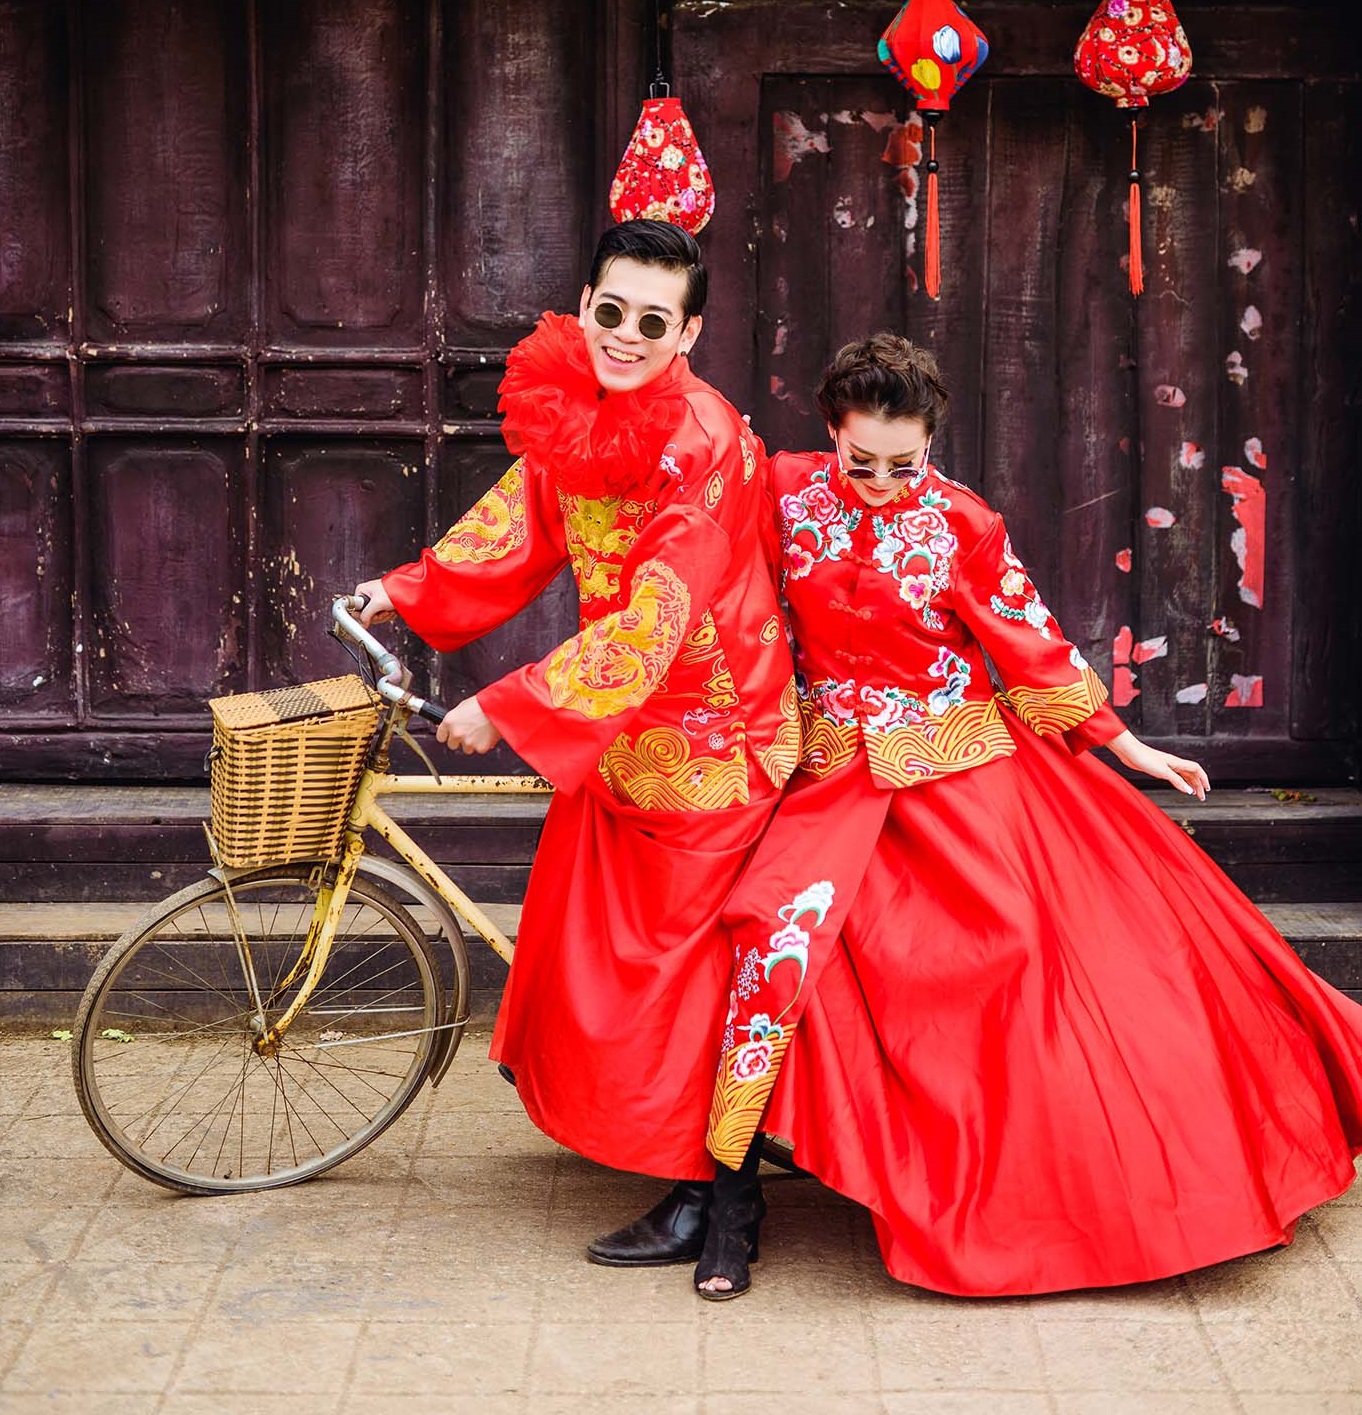 Những bức ảnh cưới tại Trung Quốc đầy màu sắc và phong cách đặc trưng của đất nước sẽ khiến bạn phải trầm trồ. Xem và cảm nhận tình yêu như một câu chuyện cổ tích trong những bức ảnh đẹp như tranh.